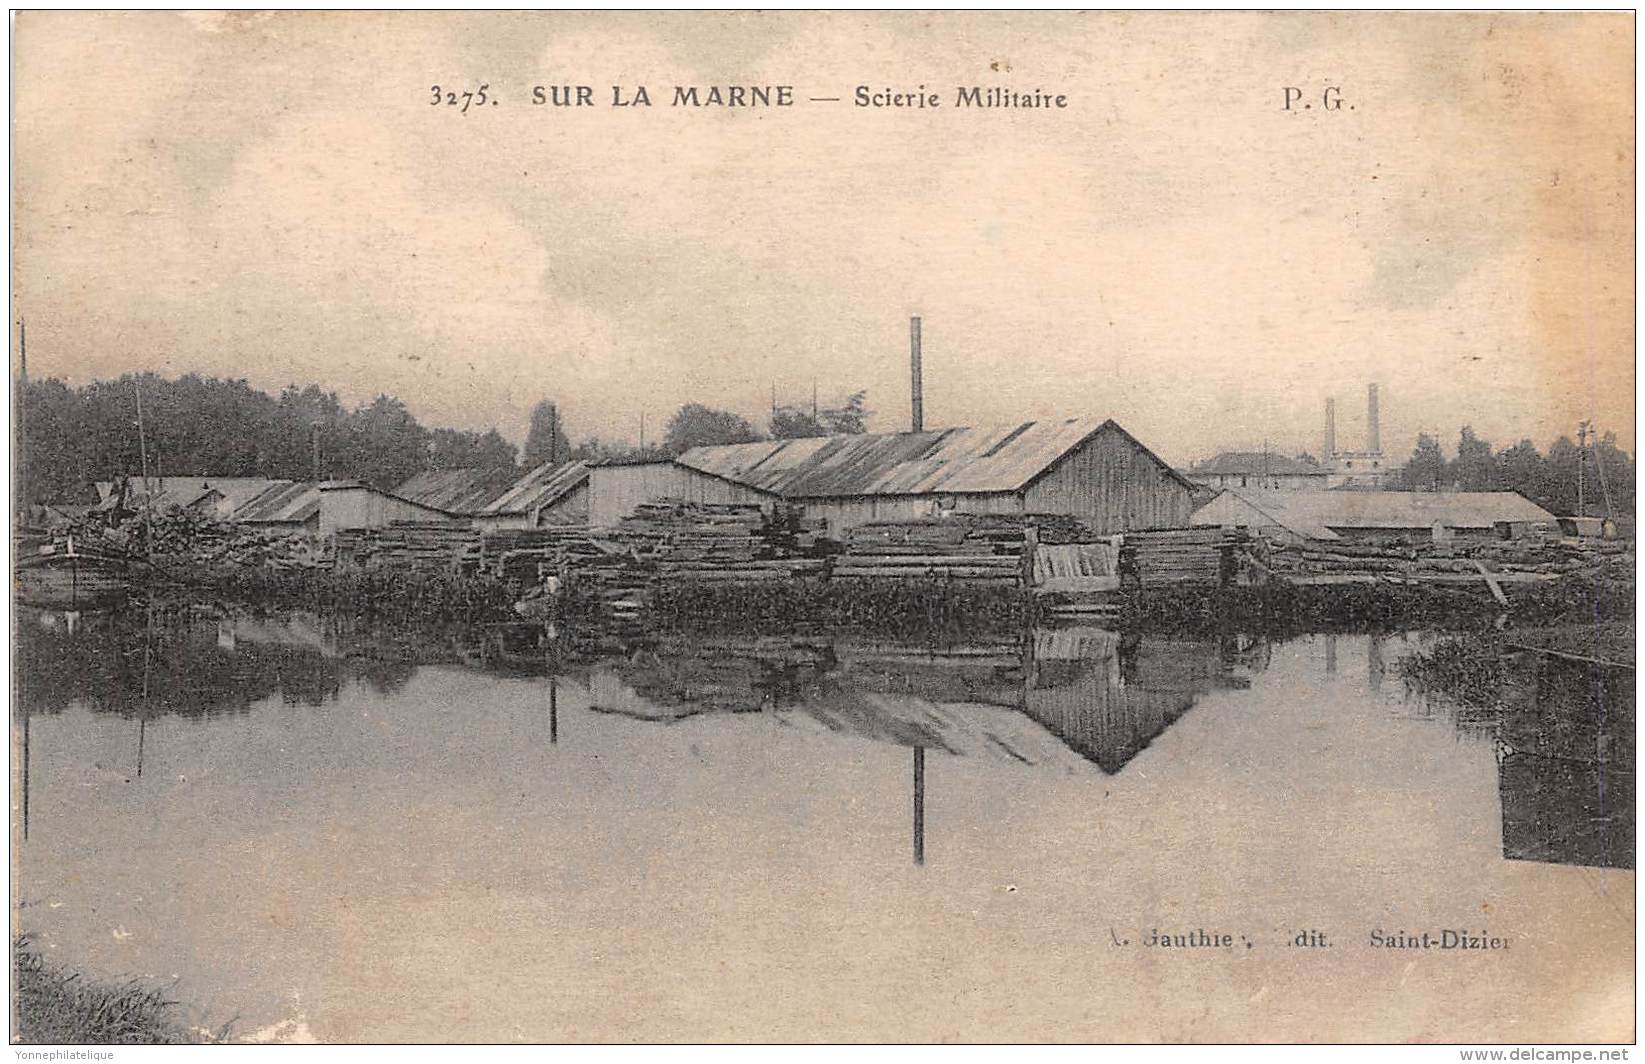 THEME BOIS EXPLOITATION / Sur La Marne - Scierie Militaire - Champagne - Ardenne